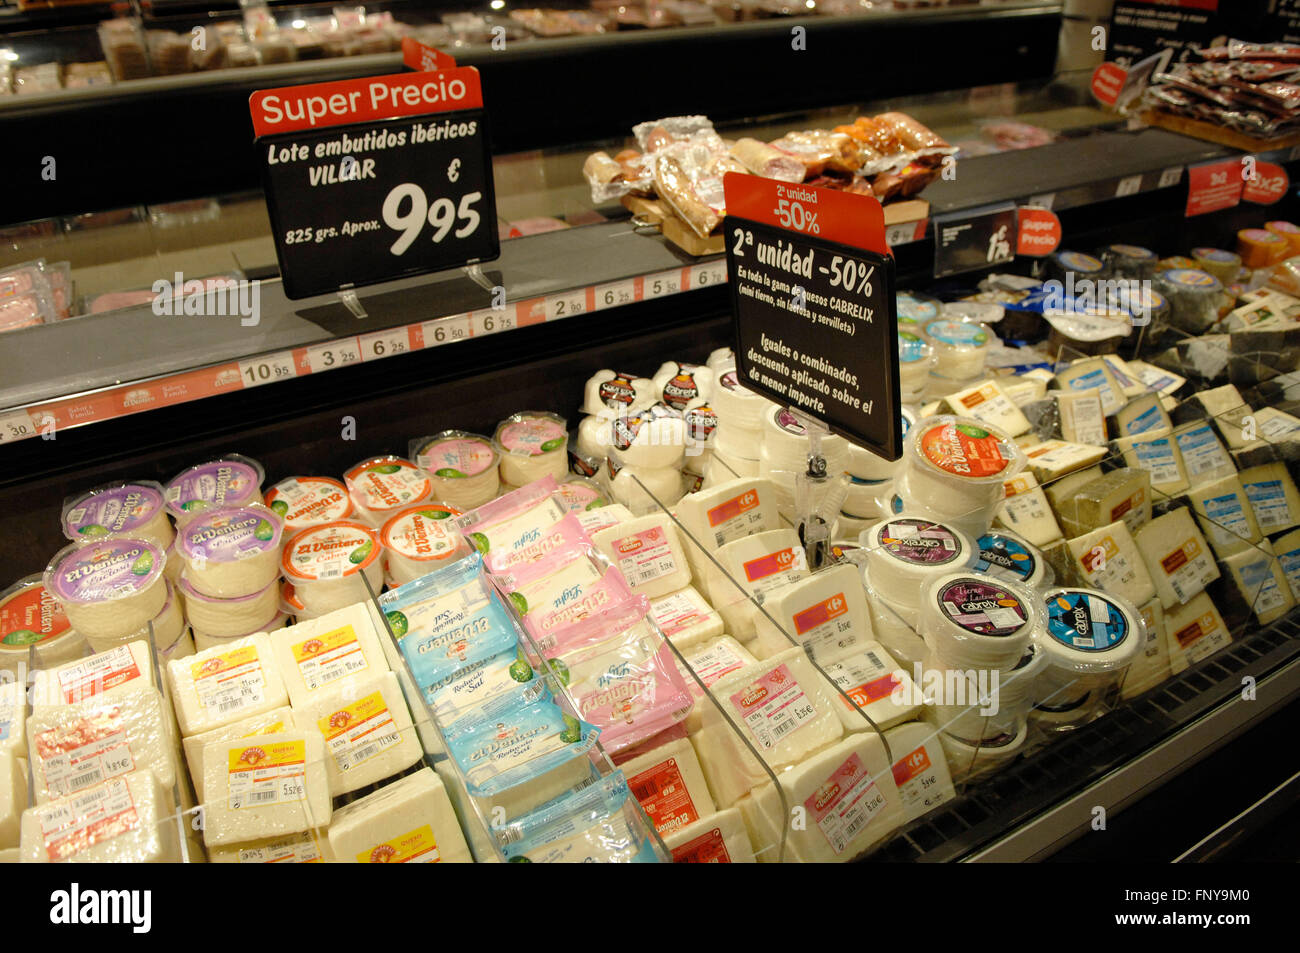 Sélection de fromages dans une section de l'alimentation froide supermarchés Carrefour. Banque D'Images